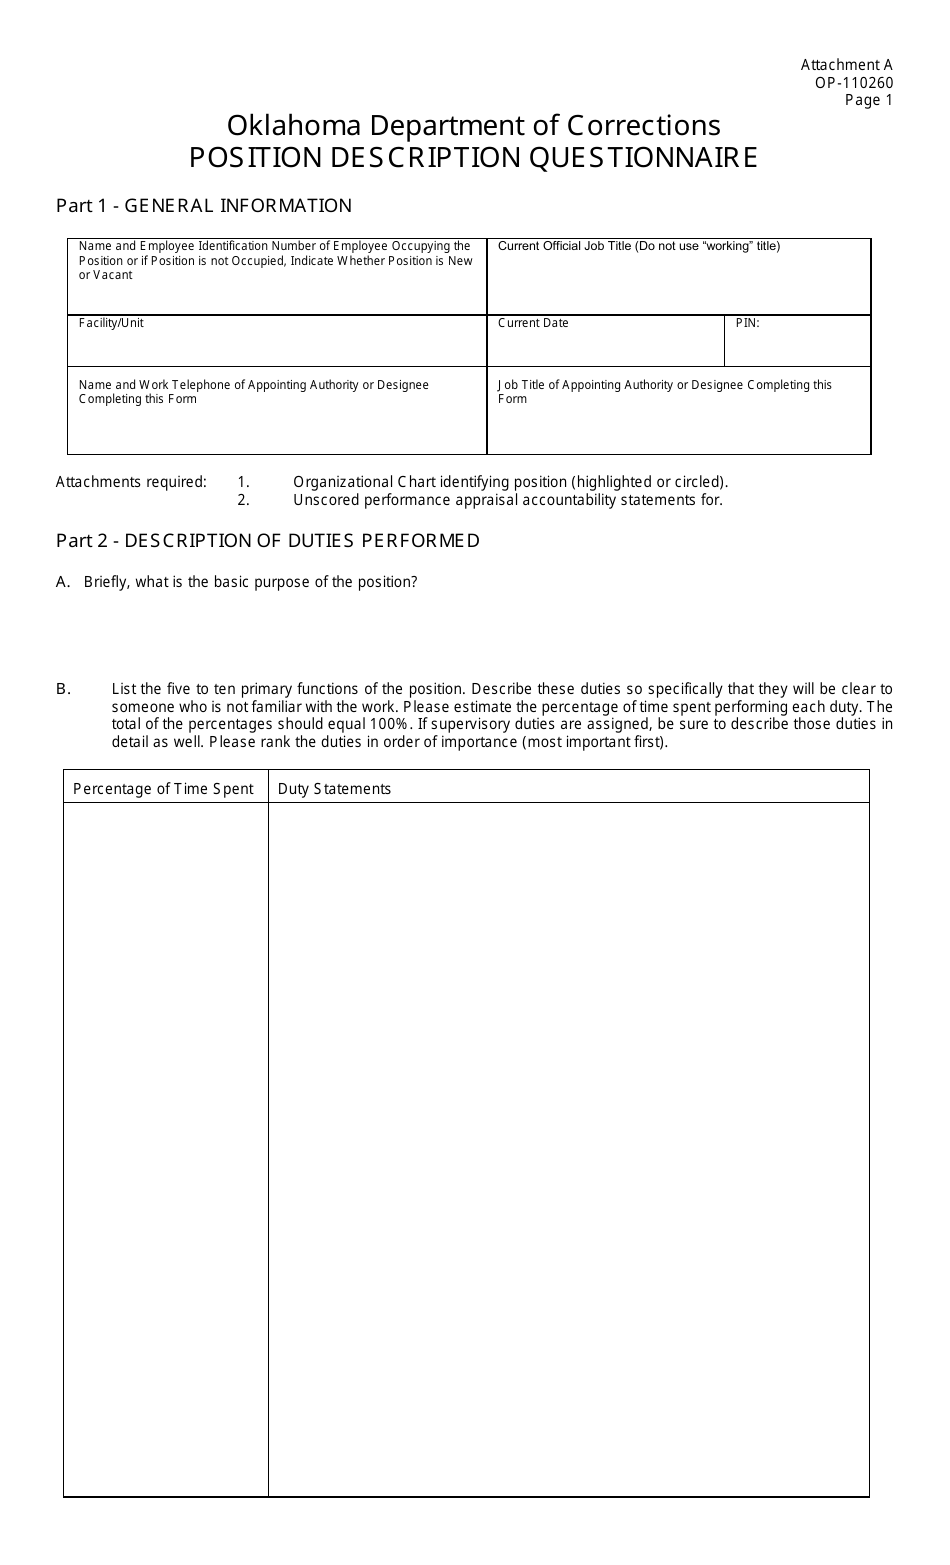 DOC Form OP-110260 Attachment A Position Description Questionnaire - Oklahoma, Page 1